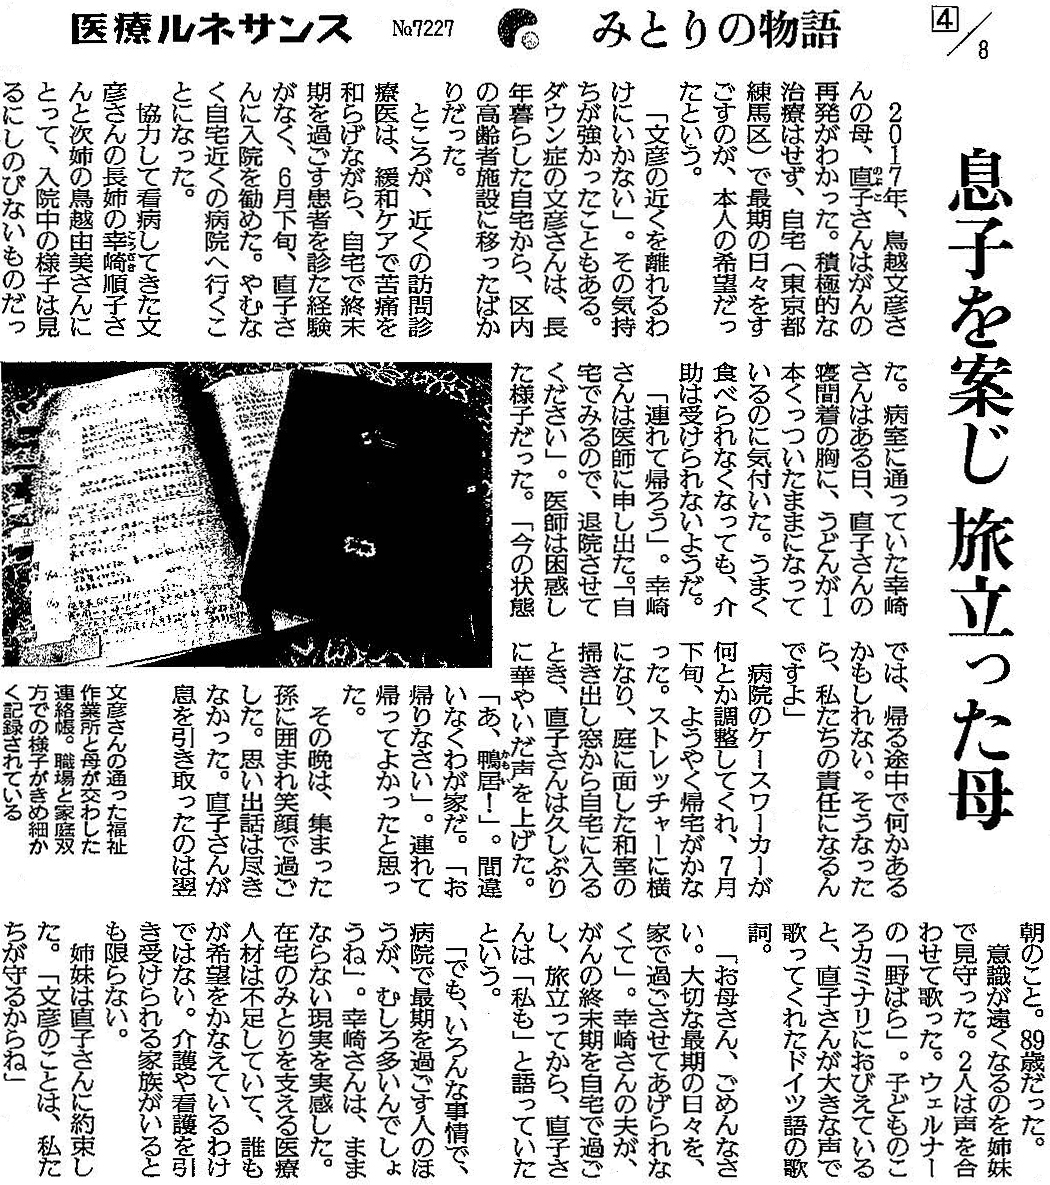 読売新聞 2020年2月24日掲載記事